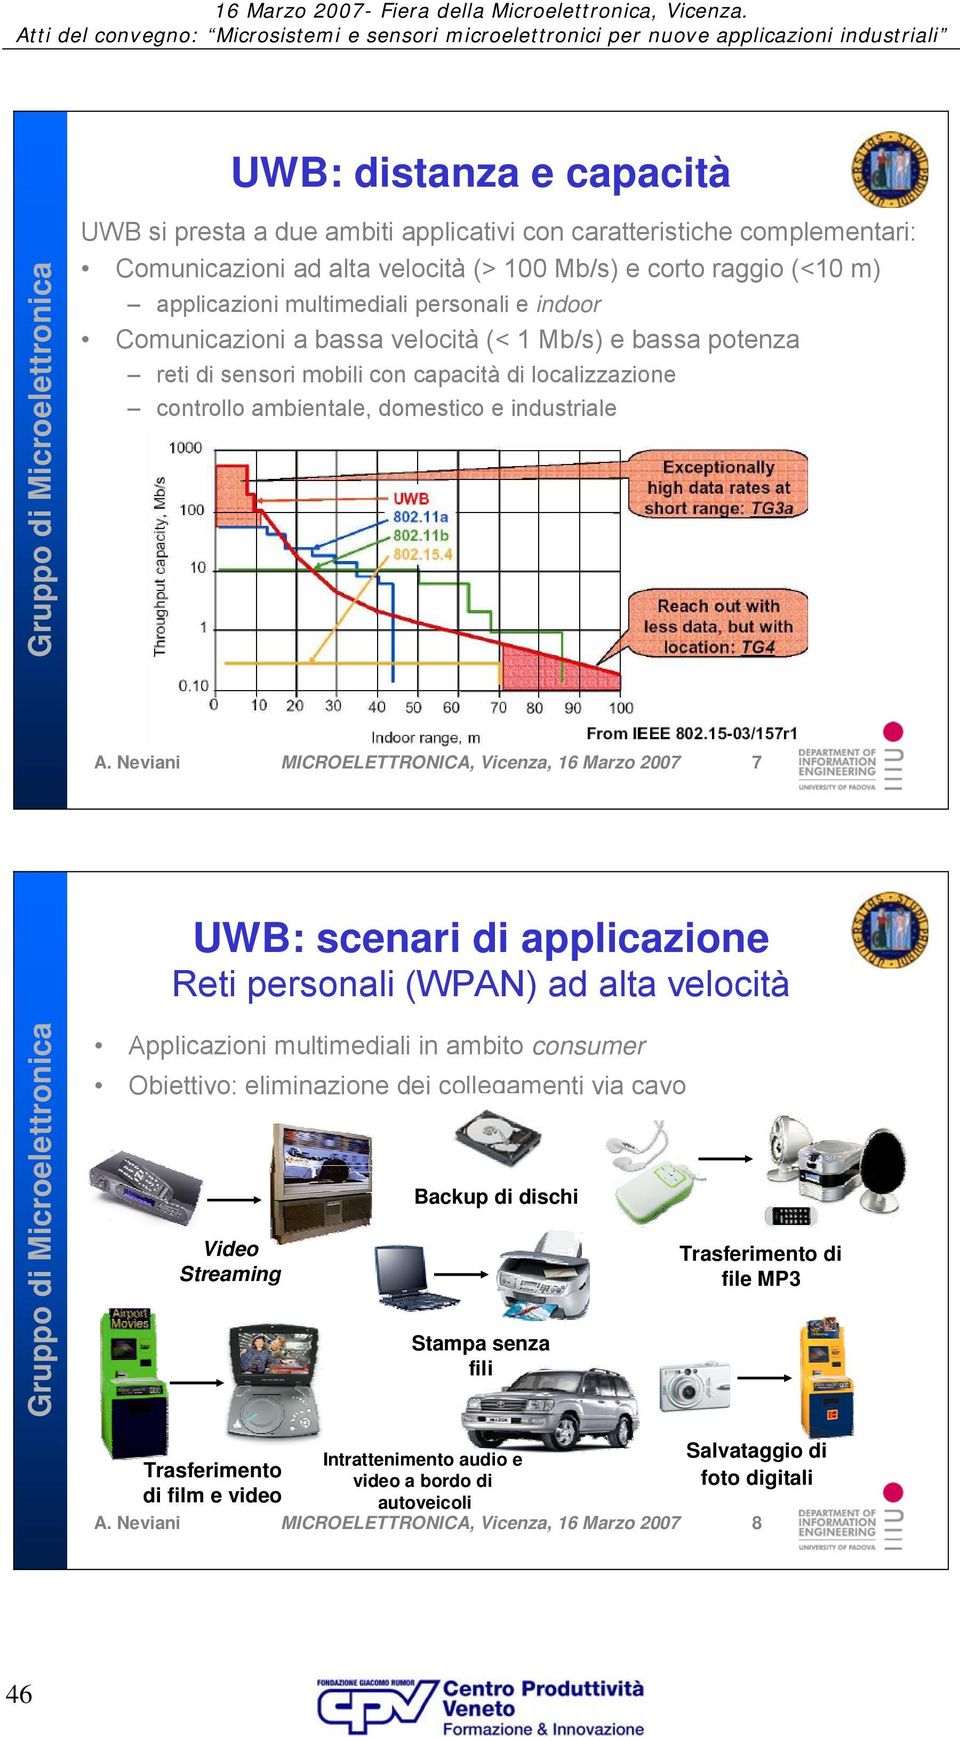 Neviani MICROELETTRONICA, Vicenza, 16 Marzo 2007 7 UWB: scenari di applicazione Reti personali (WPAN) ad alta velocità Applicazioni multimediali in ambito consumer Obiettivo: eliminazione dei